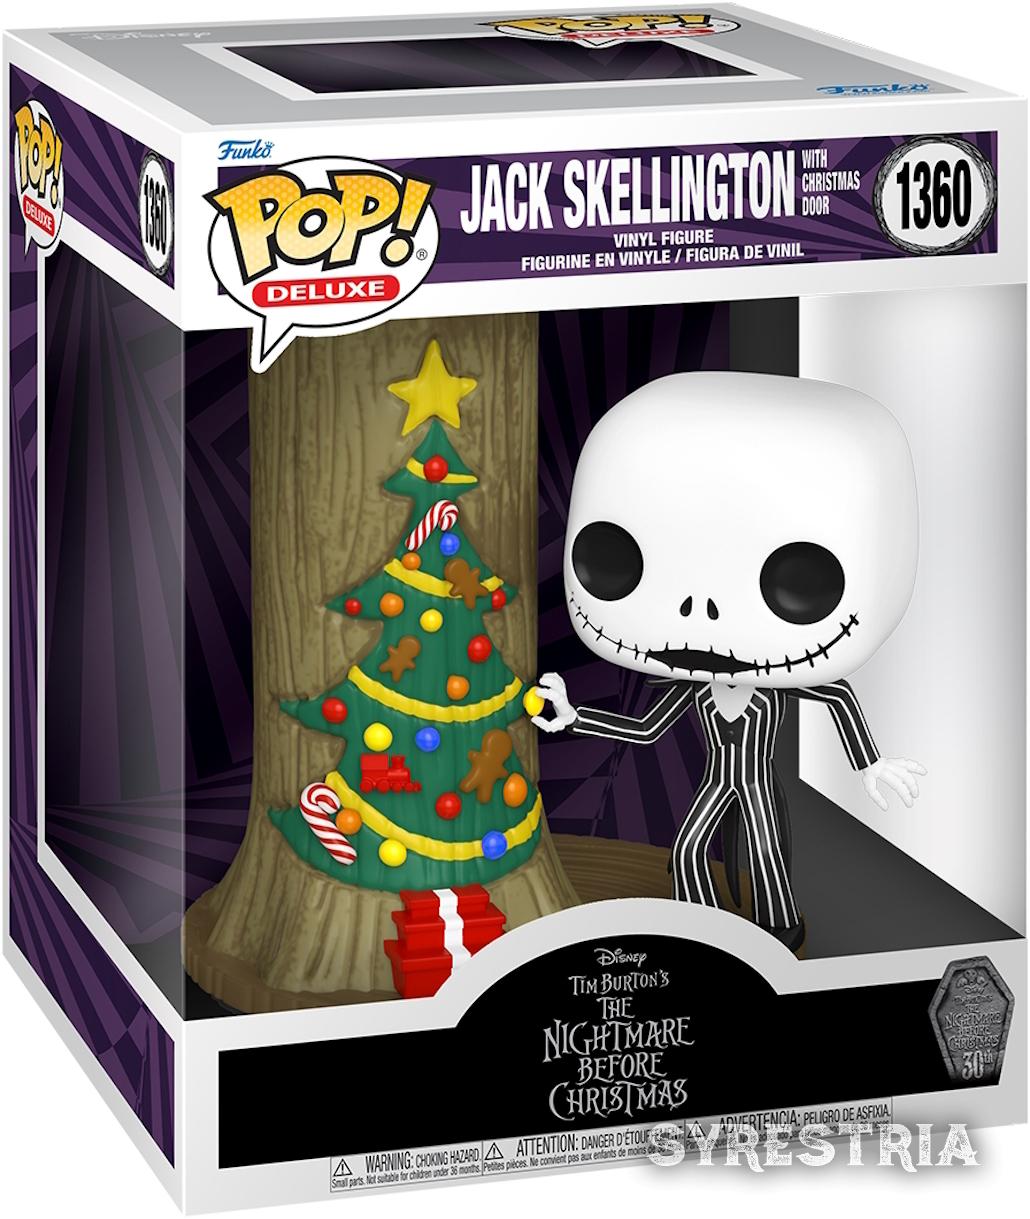 Nightmare Before Christmas - Jack Skellington with Christmas Door 1360  - Funko Pop! Deluxe